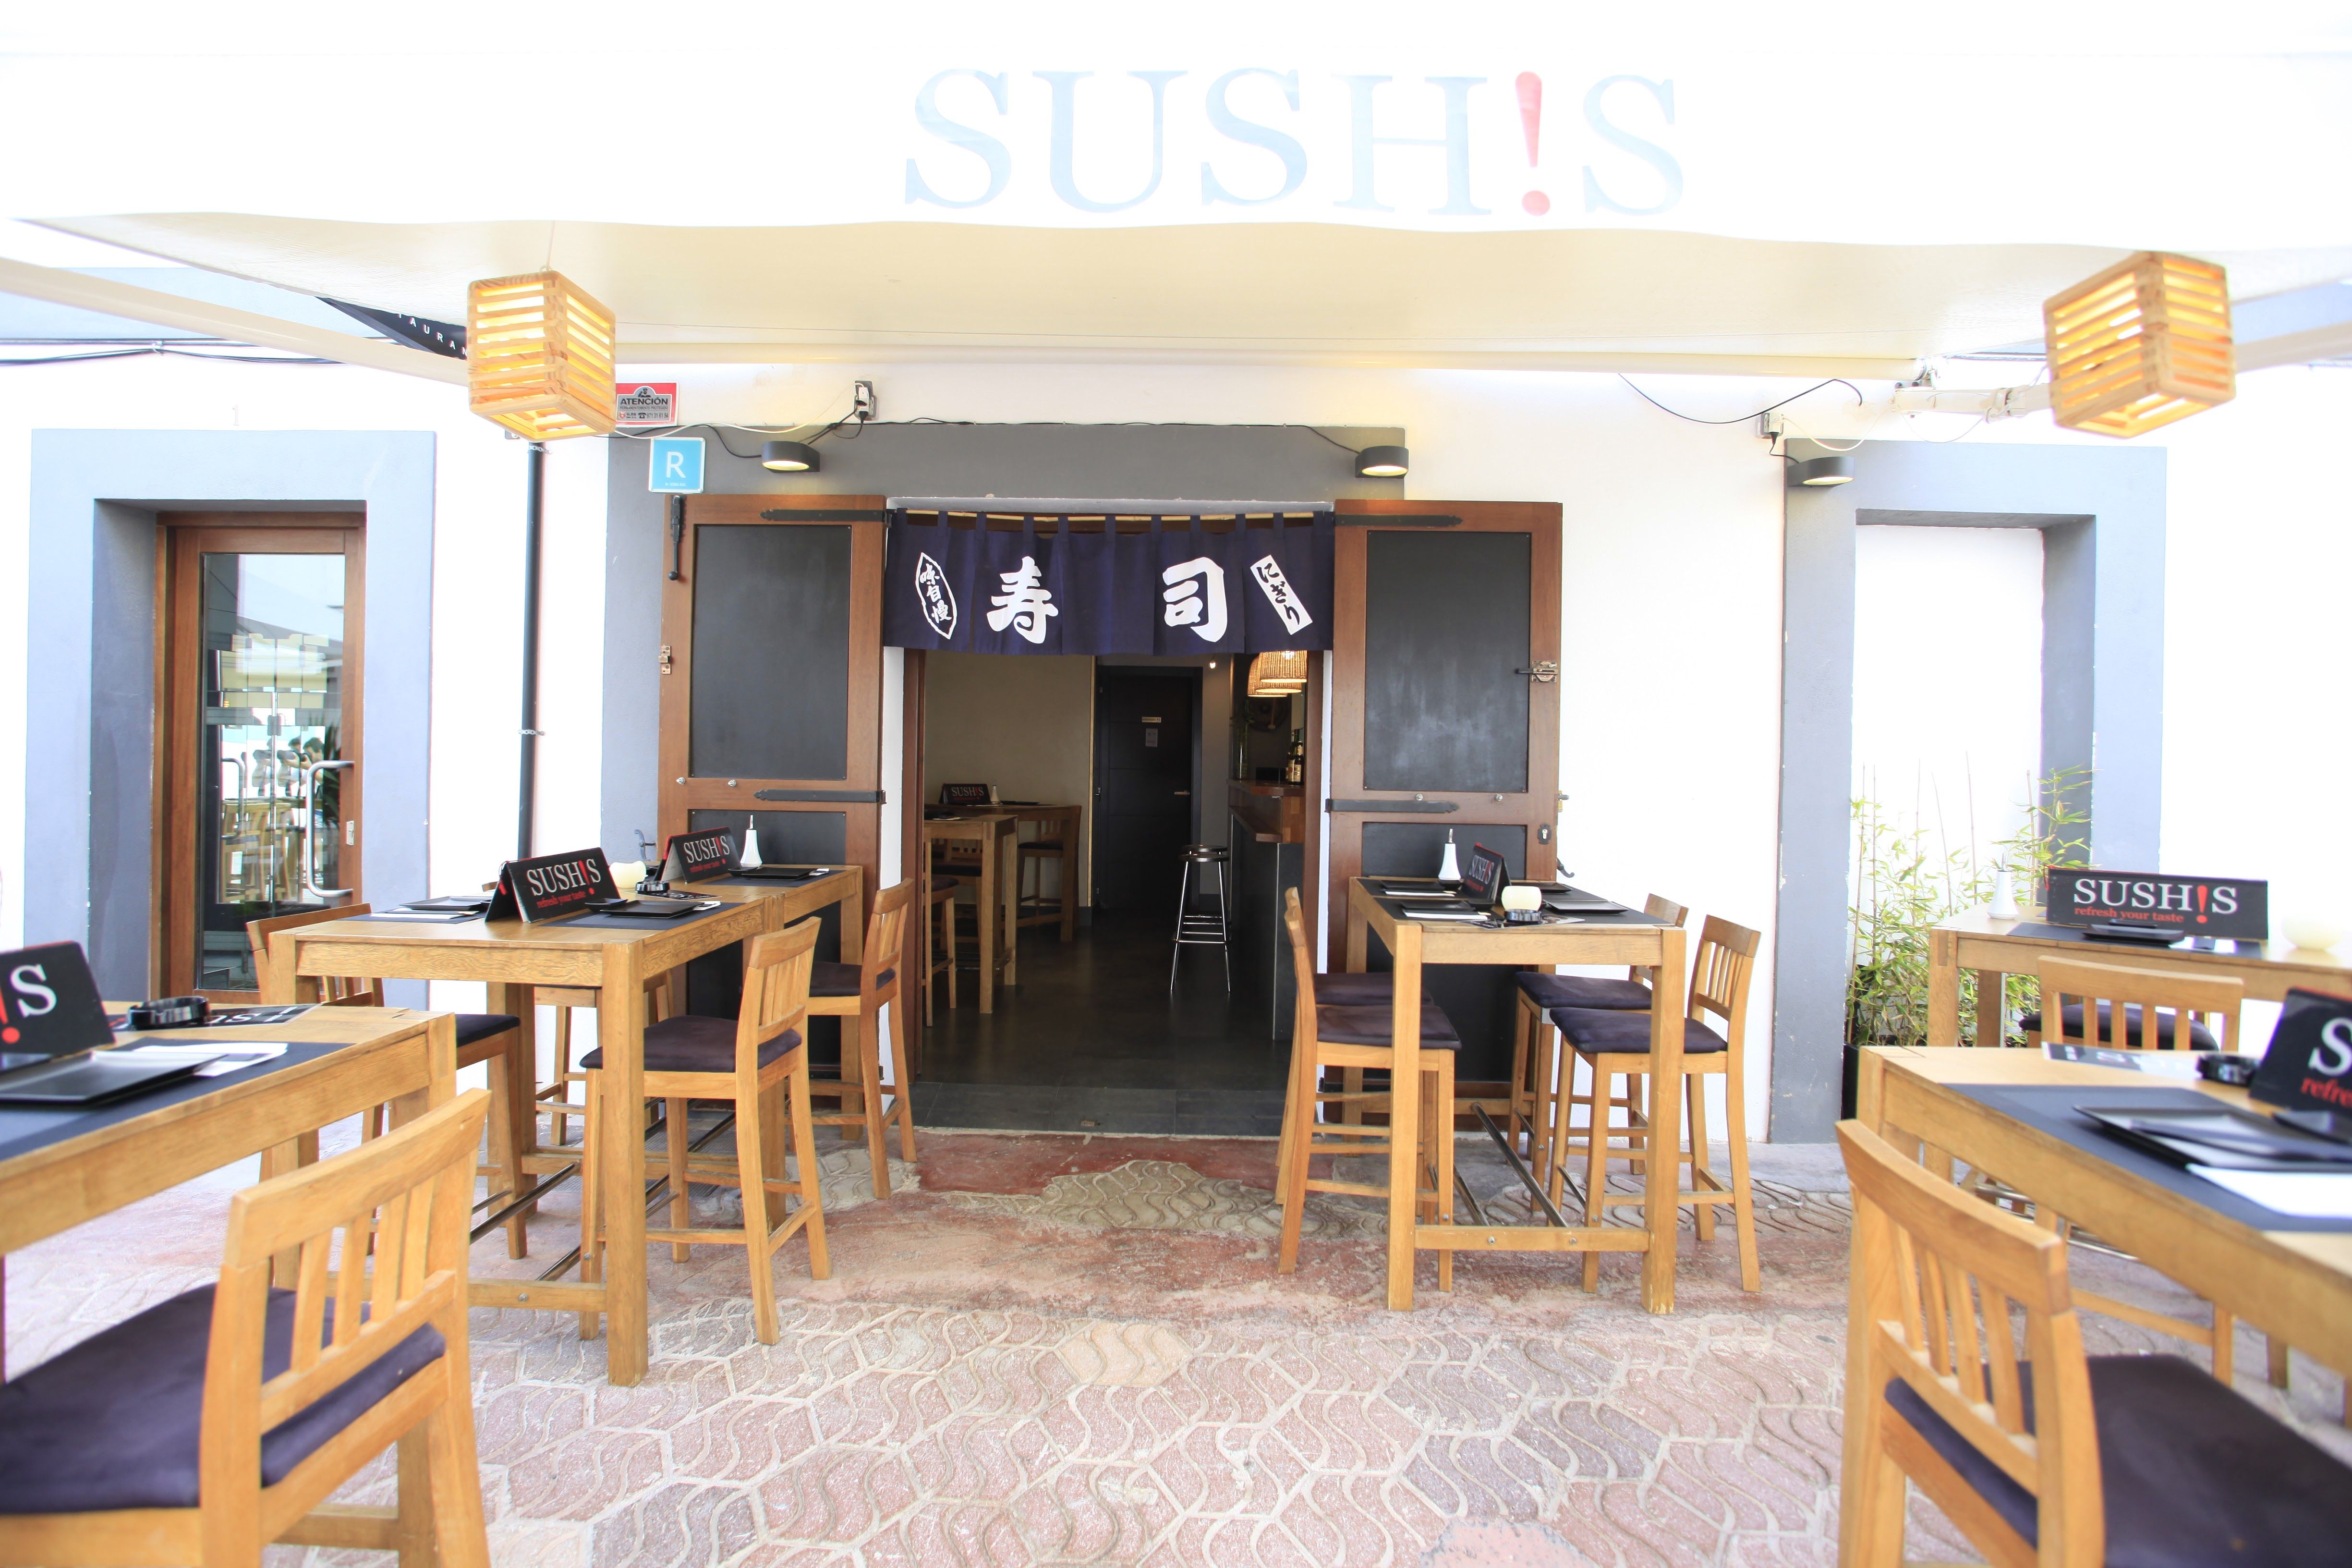 Foto 23 de Cocina japonesa en Ibiza | Sushis Ibiza